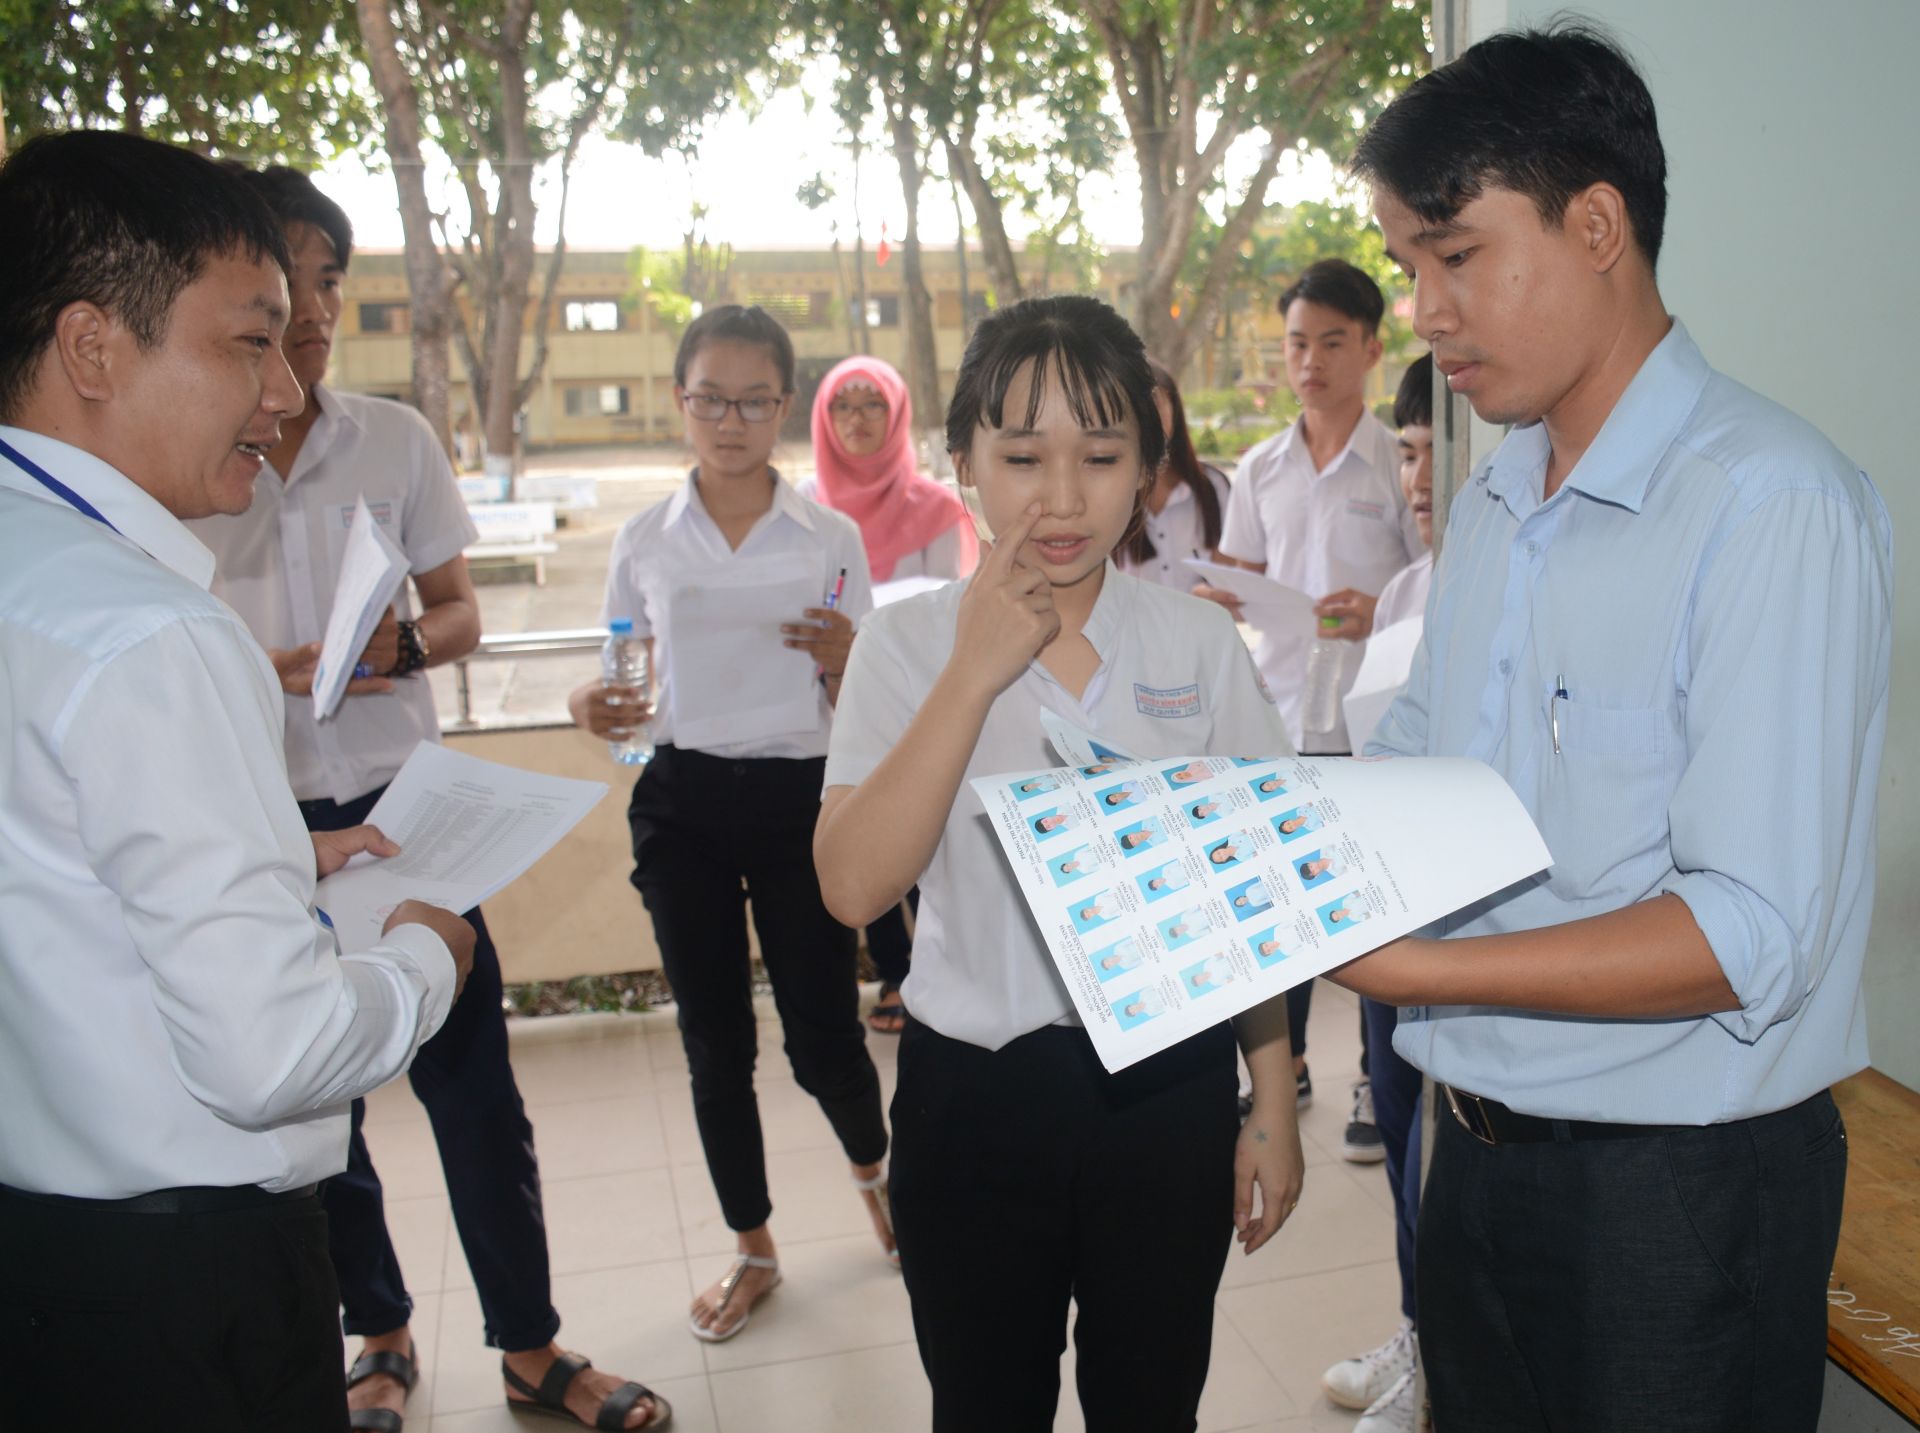 Điểm báo in Tây Ninh ngày 30.01.2019